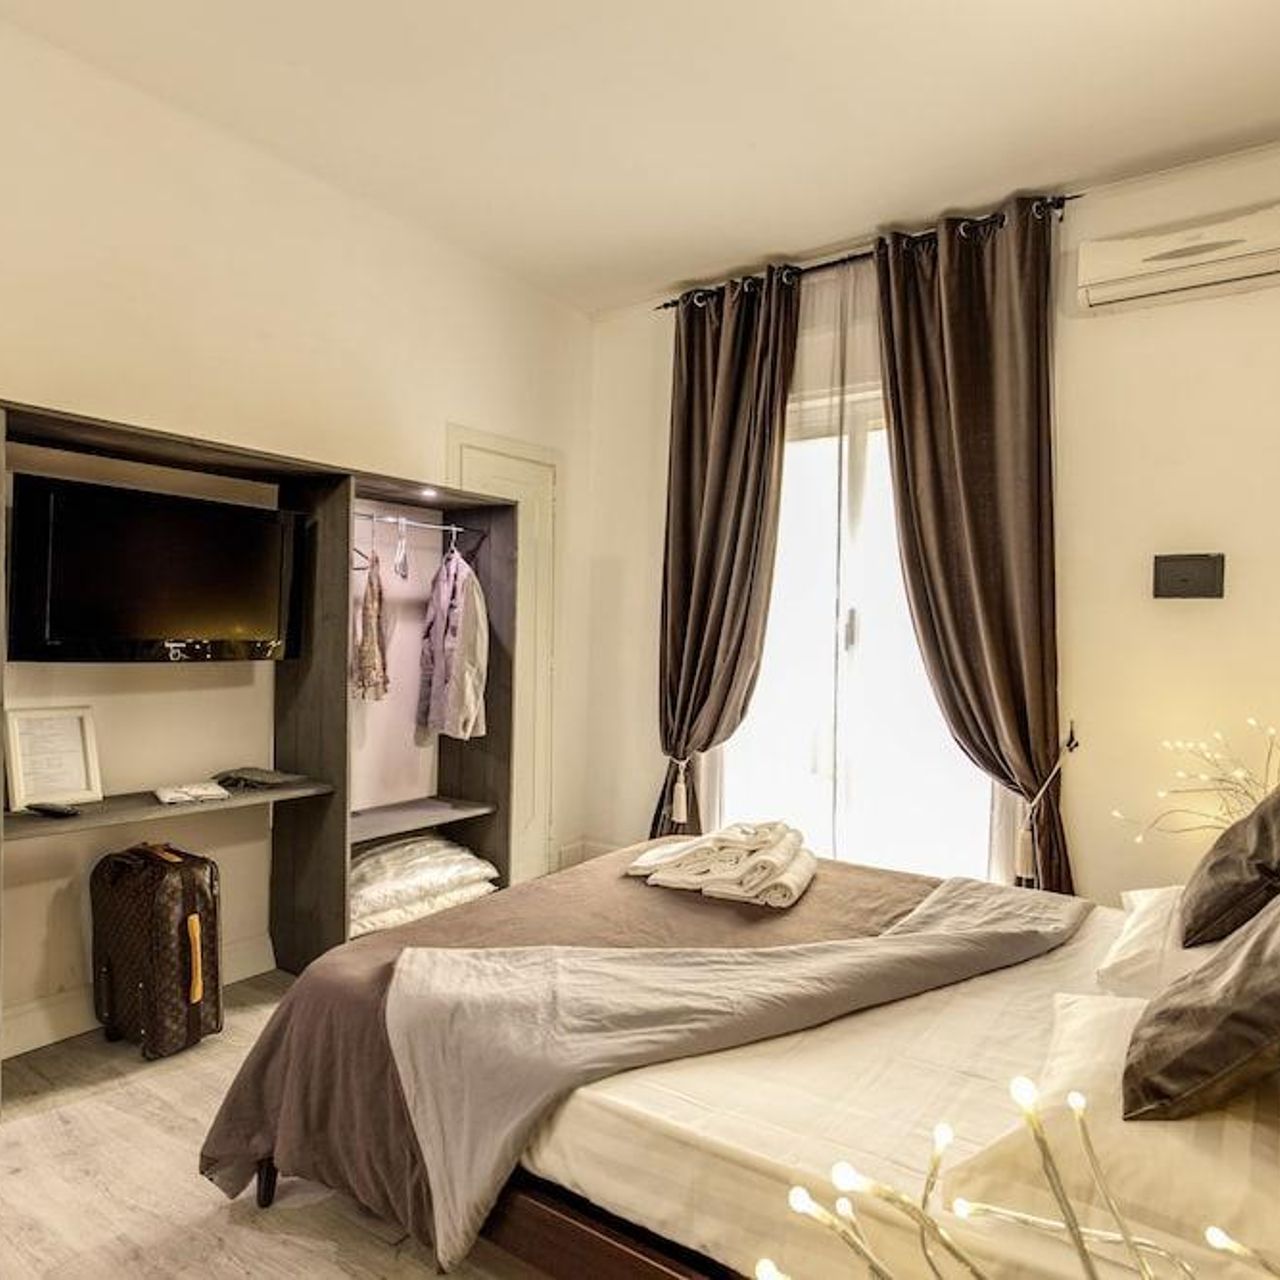 Hotel Alle Porte del Vaticano - Rome - Great prices at HOTEL INFO